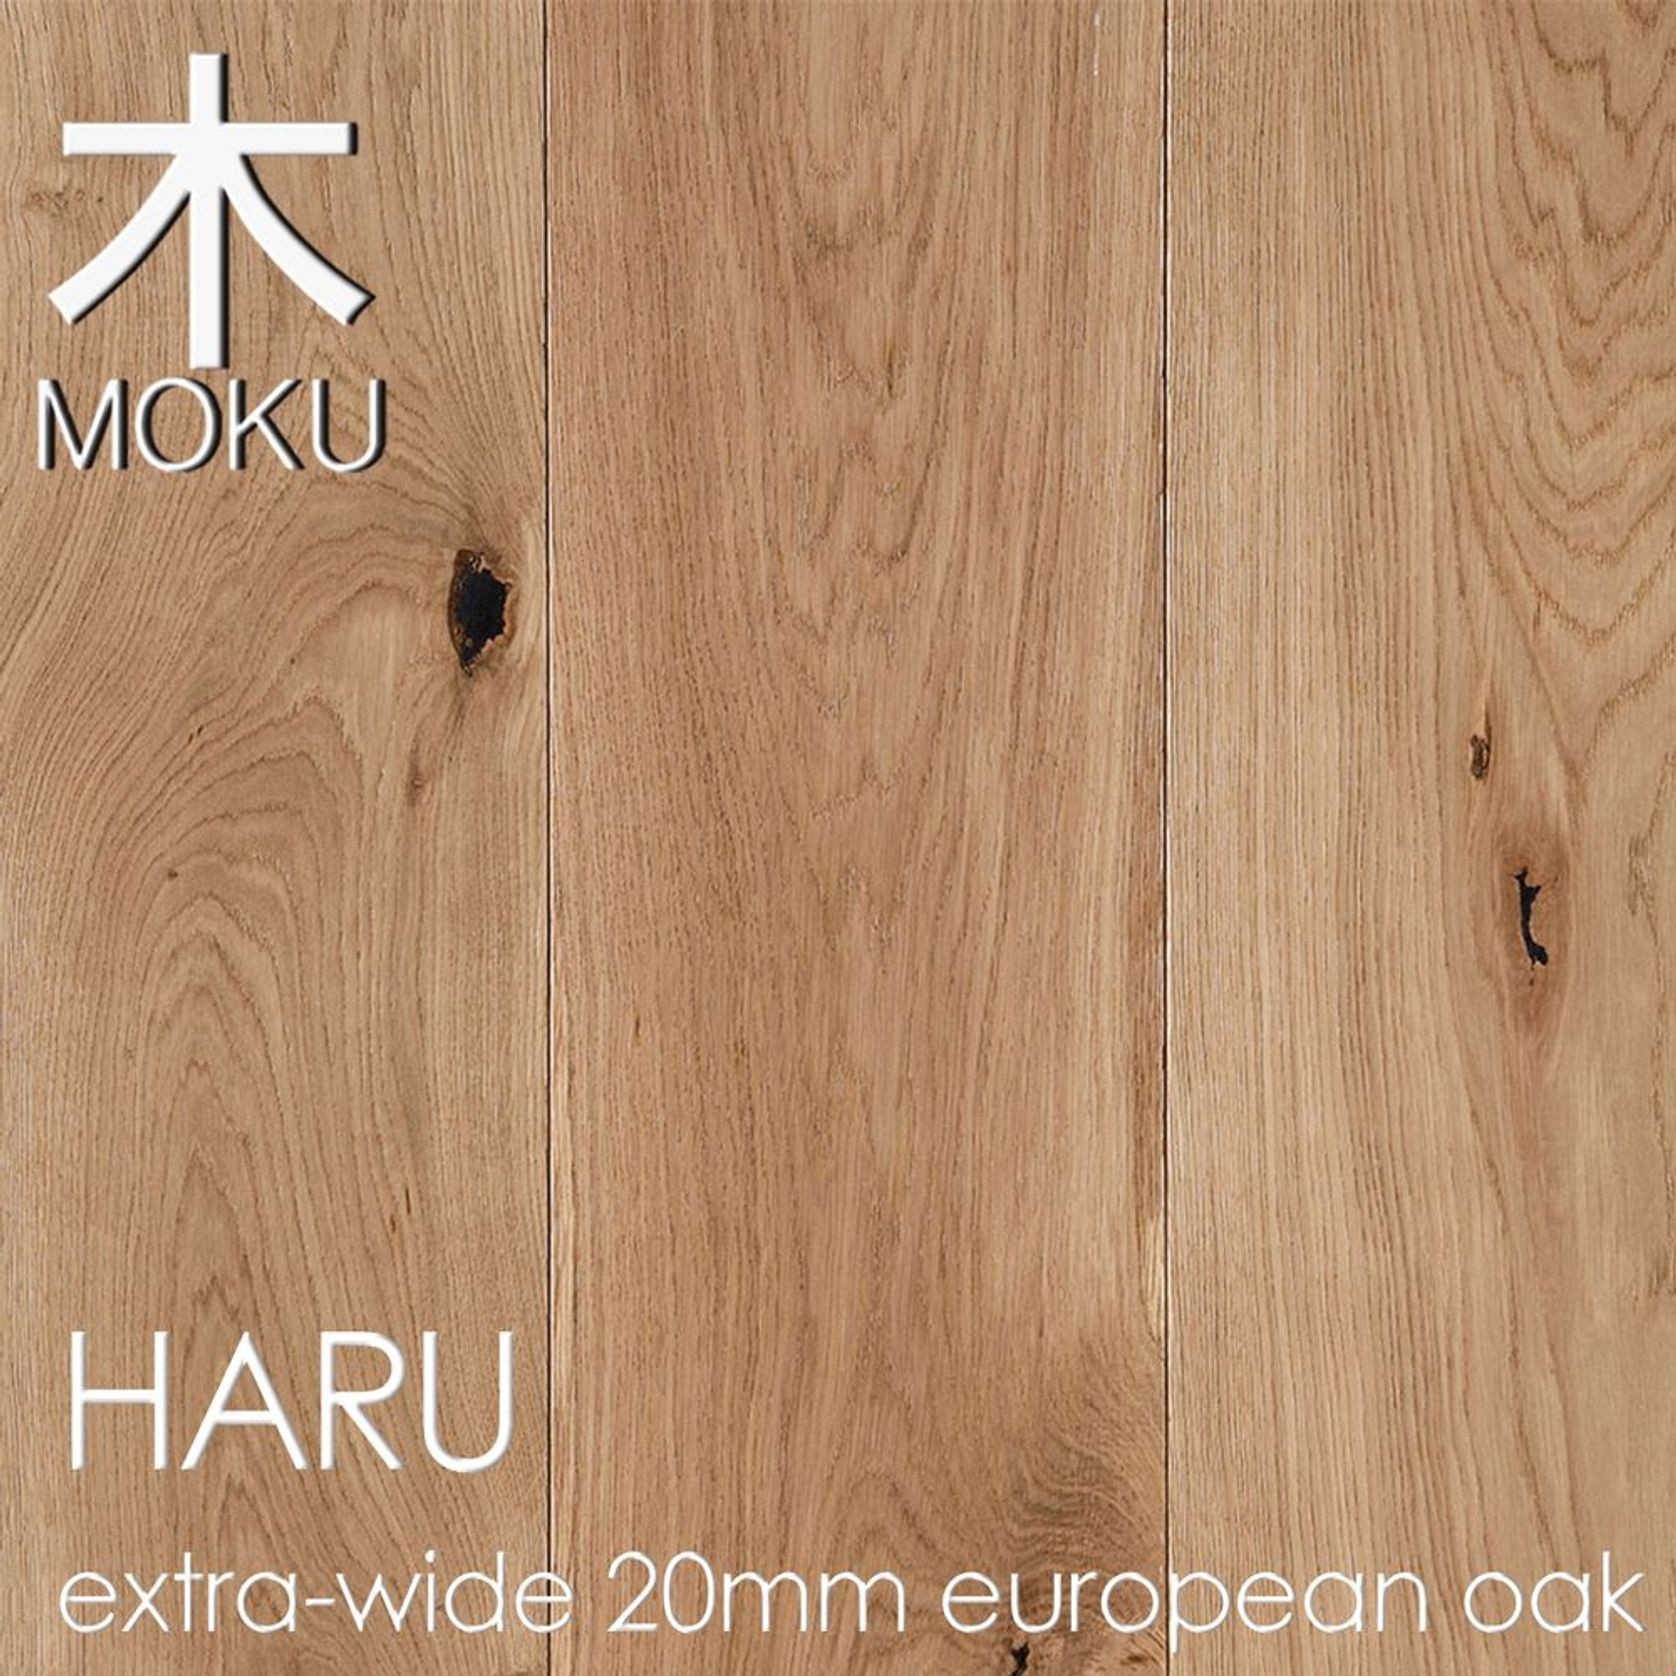 HARU "Natural" European Oak Engineered Floorboards gallery detail image